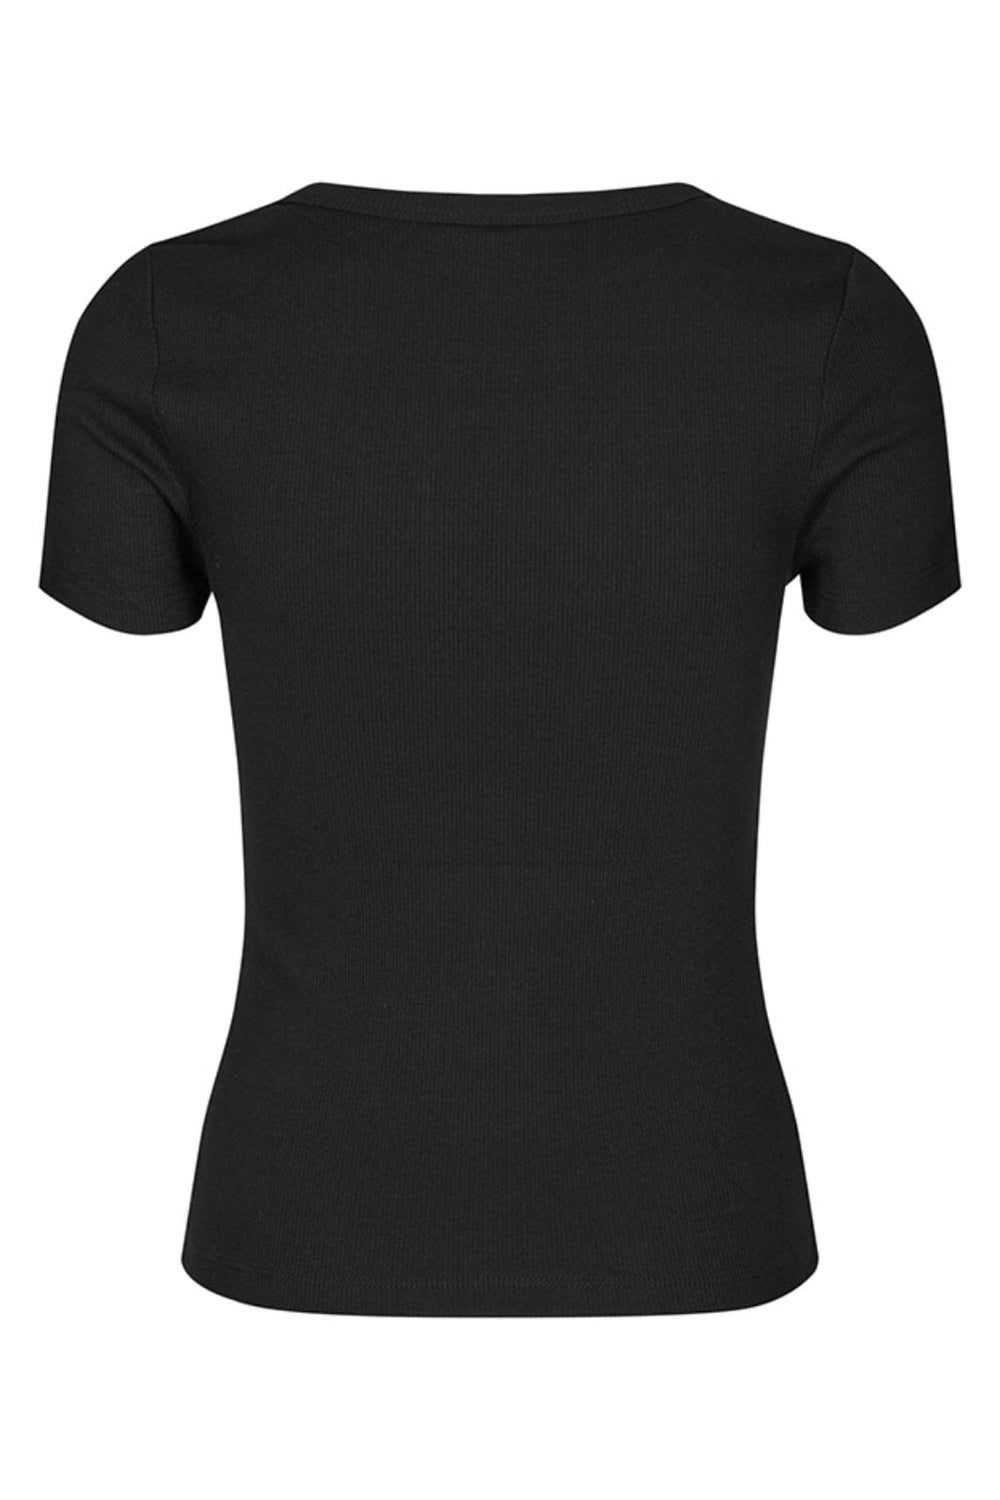 MbyM - Otis-M - Black T-shirts 